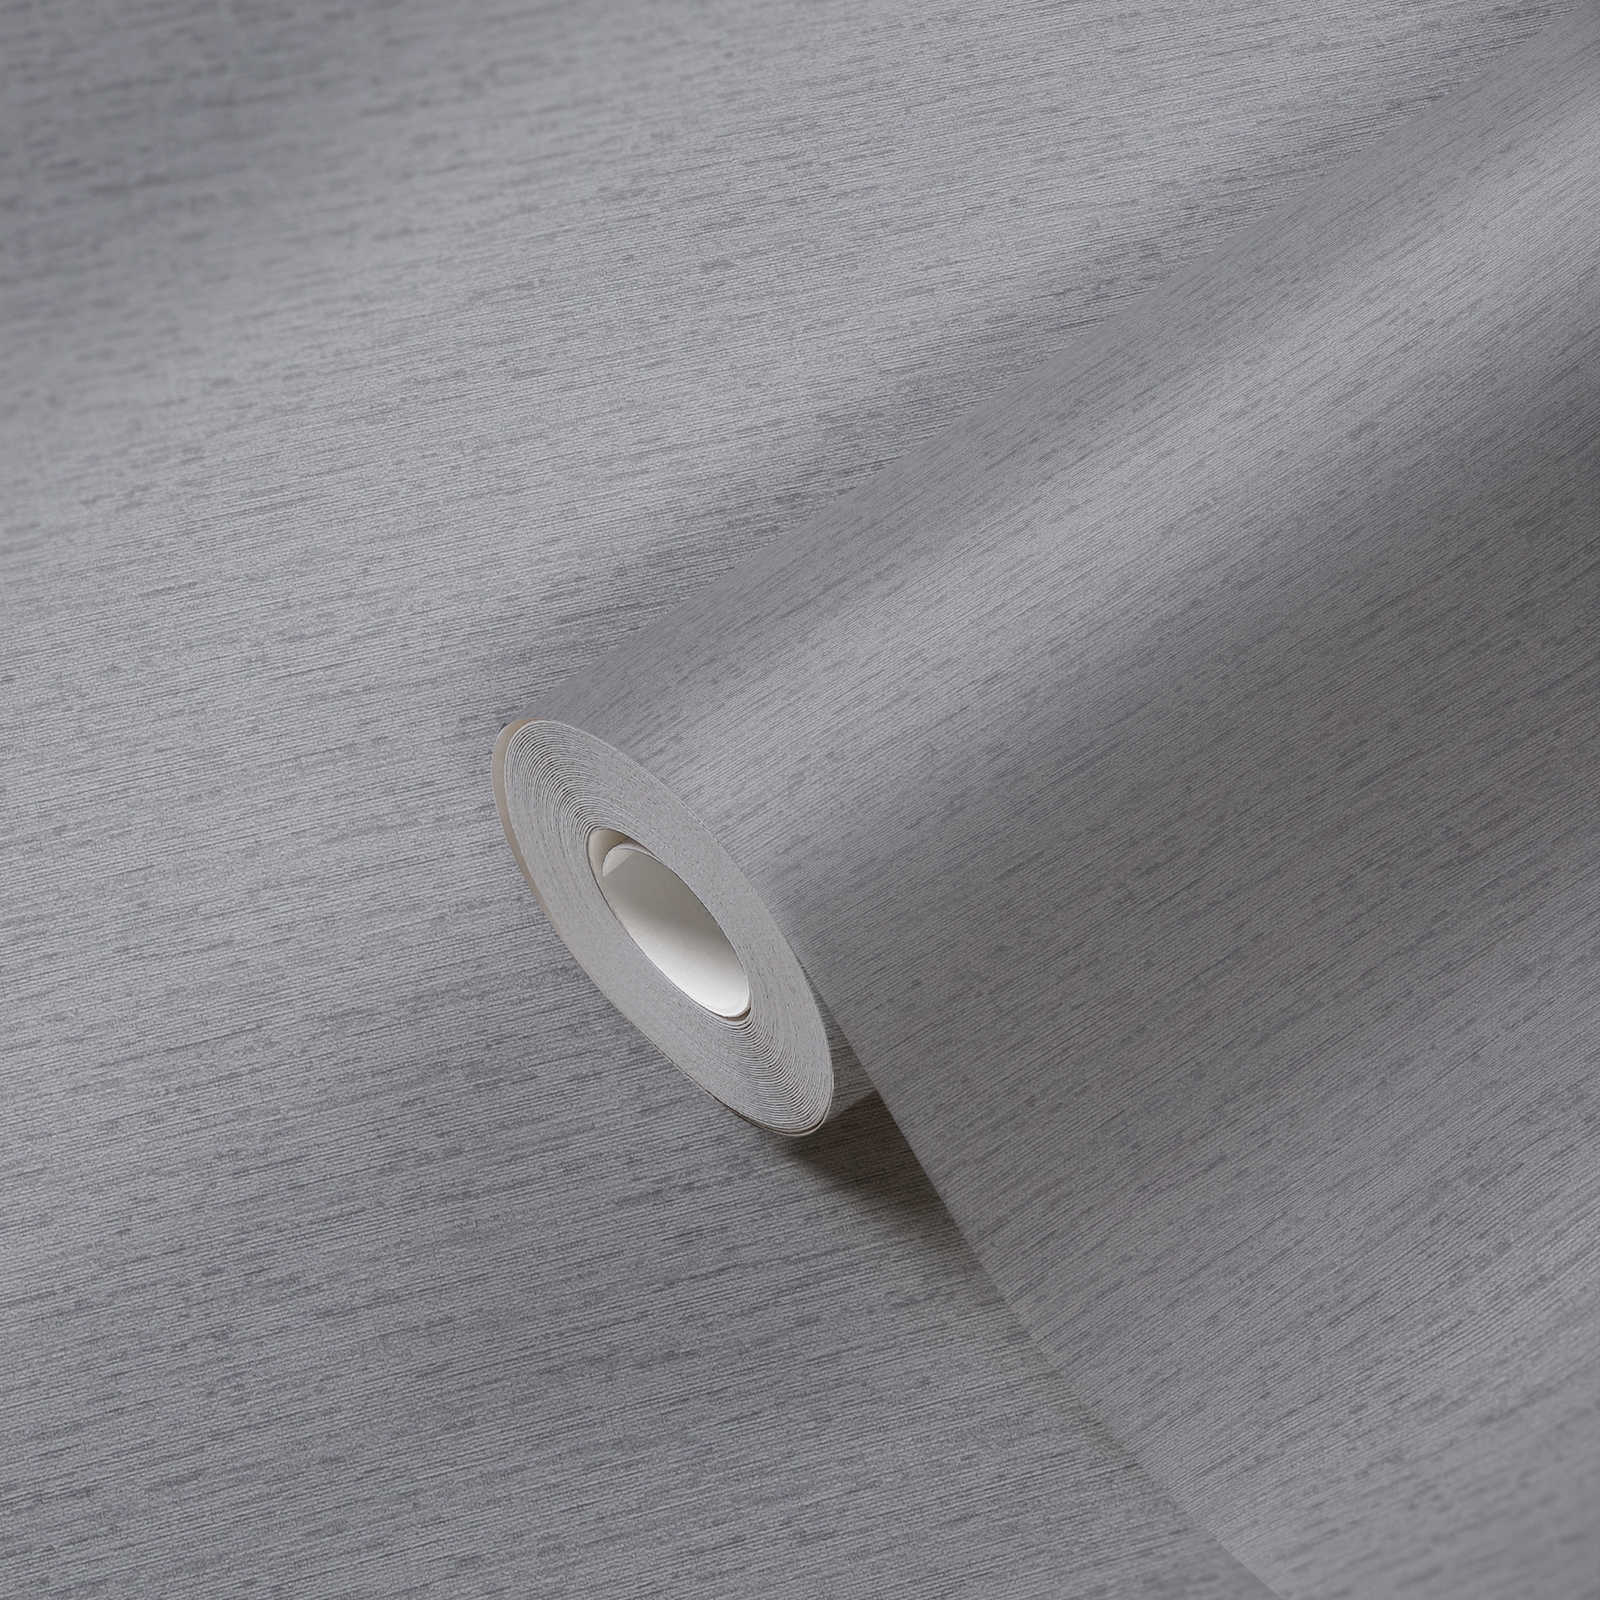             Wallpaper plain in fabric structure, matt - grey
        